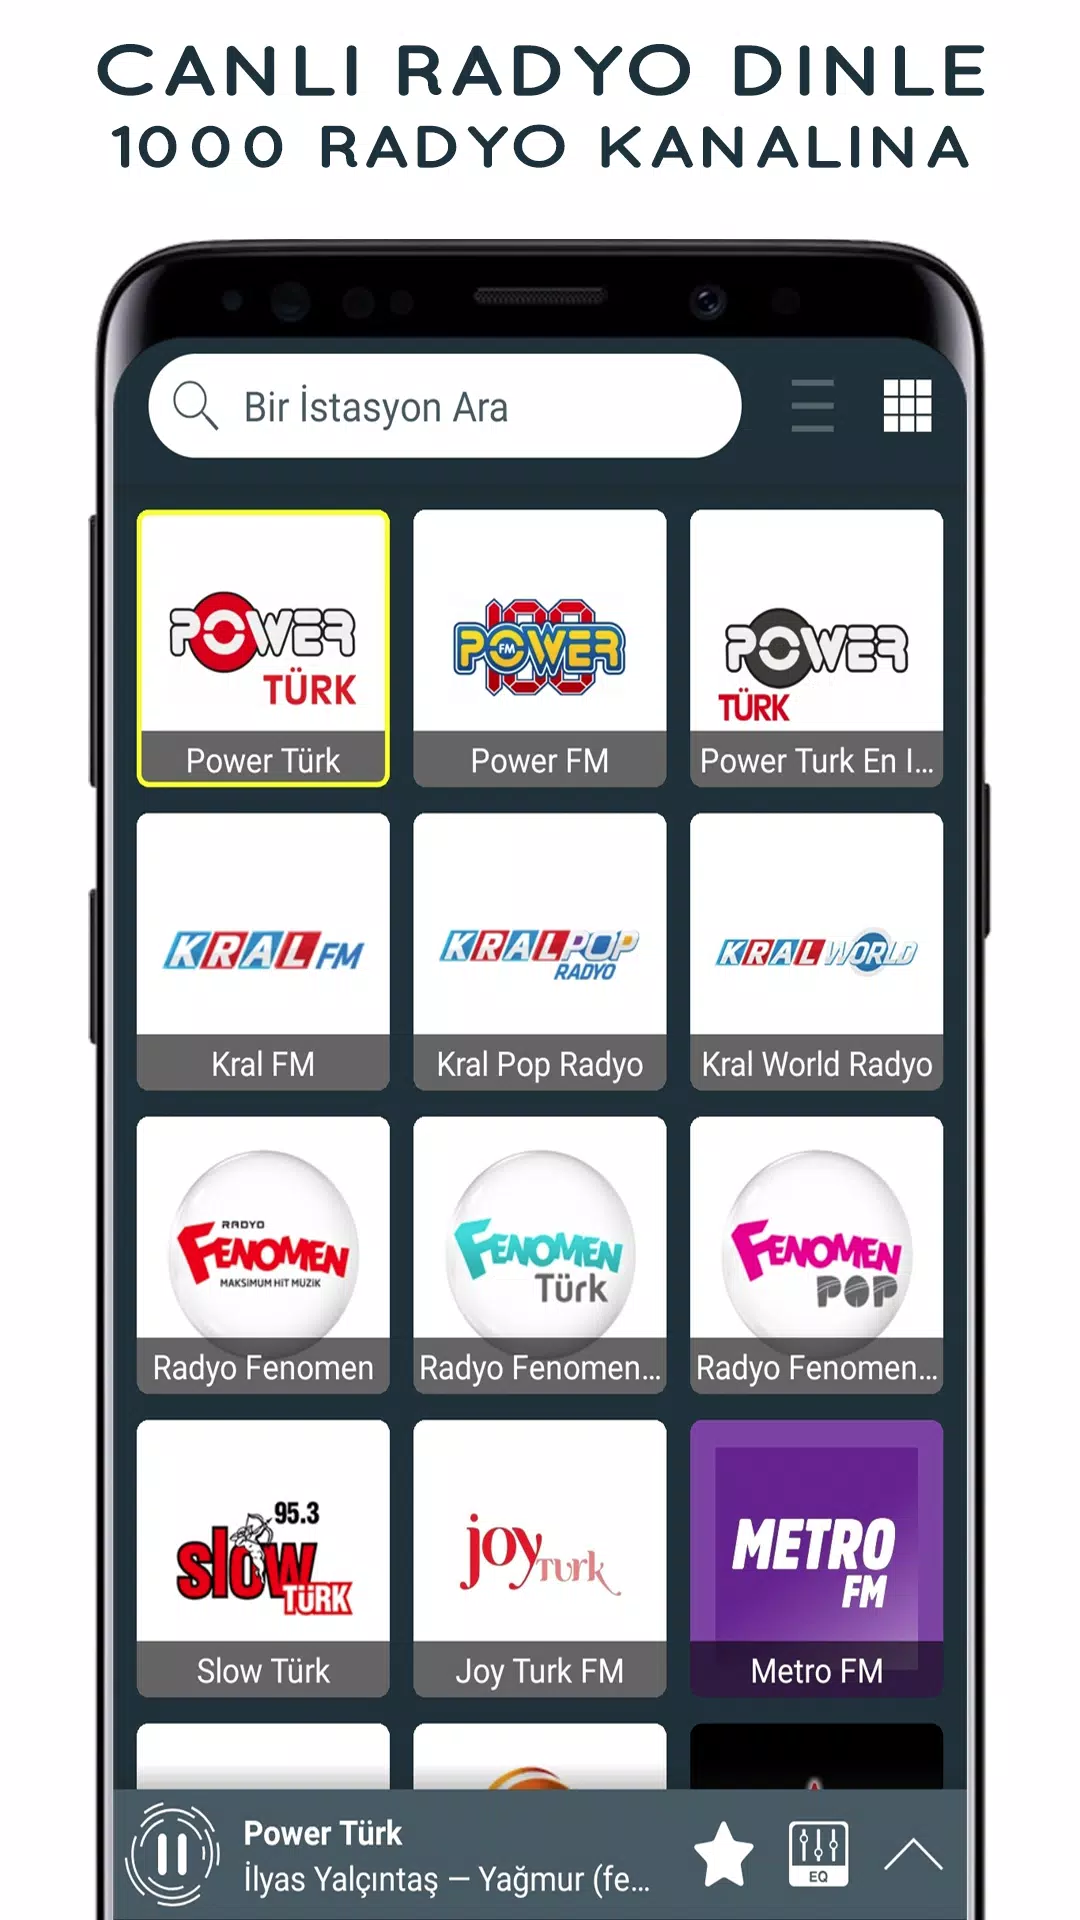 Radyo Türk - canlı radyo dinle für Android - APK herunterladen